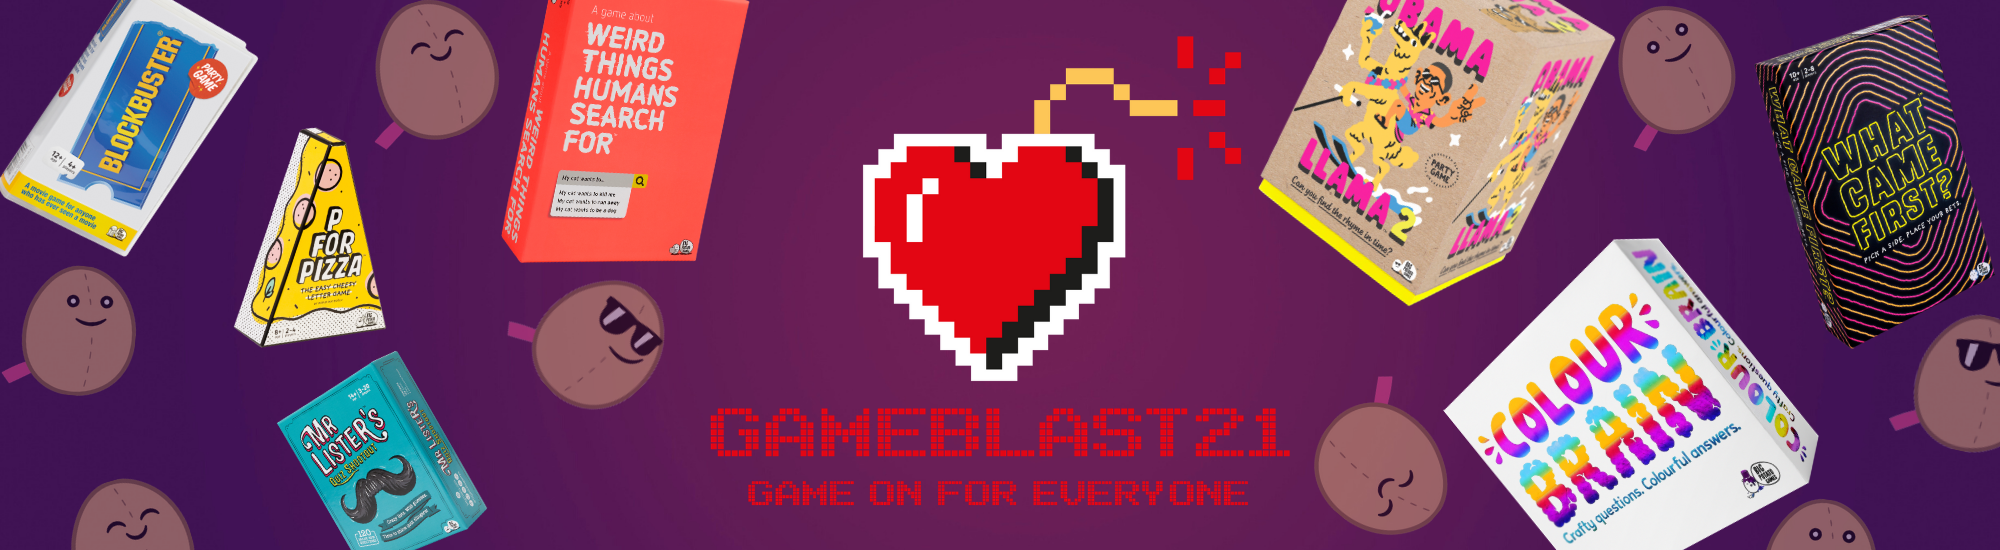 Os melhores jogos de 2022 segundo o GameBlast - GameBlast